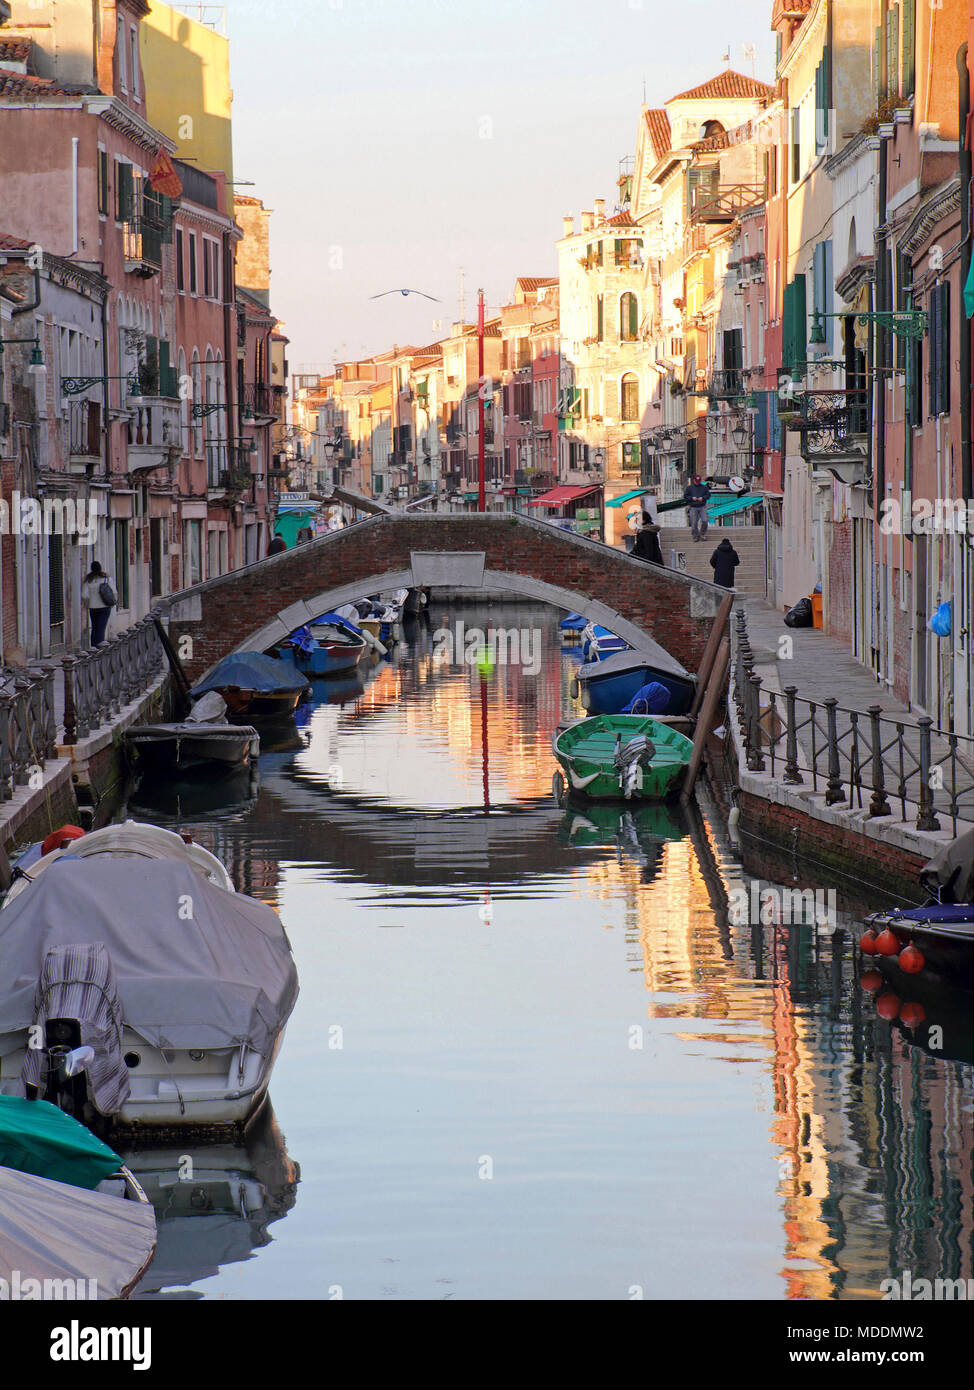 Vista sul canale veneziano, Italia Foto Stock